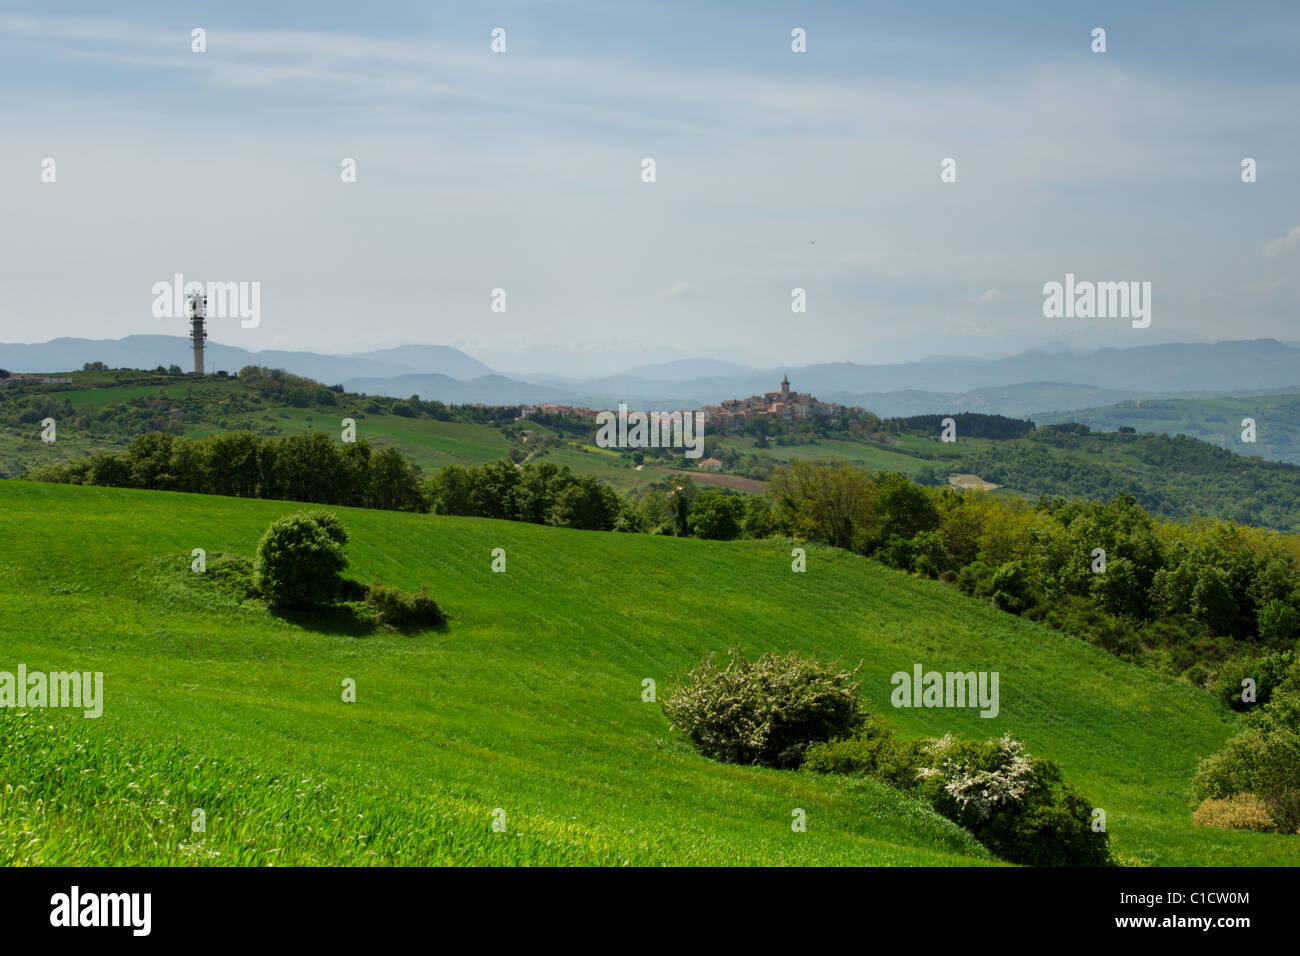 La fin du printemps paysage rural de la région Molise (Italie) avec centre village loin Banque D'Images